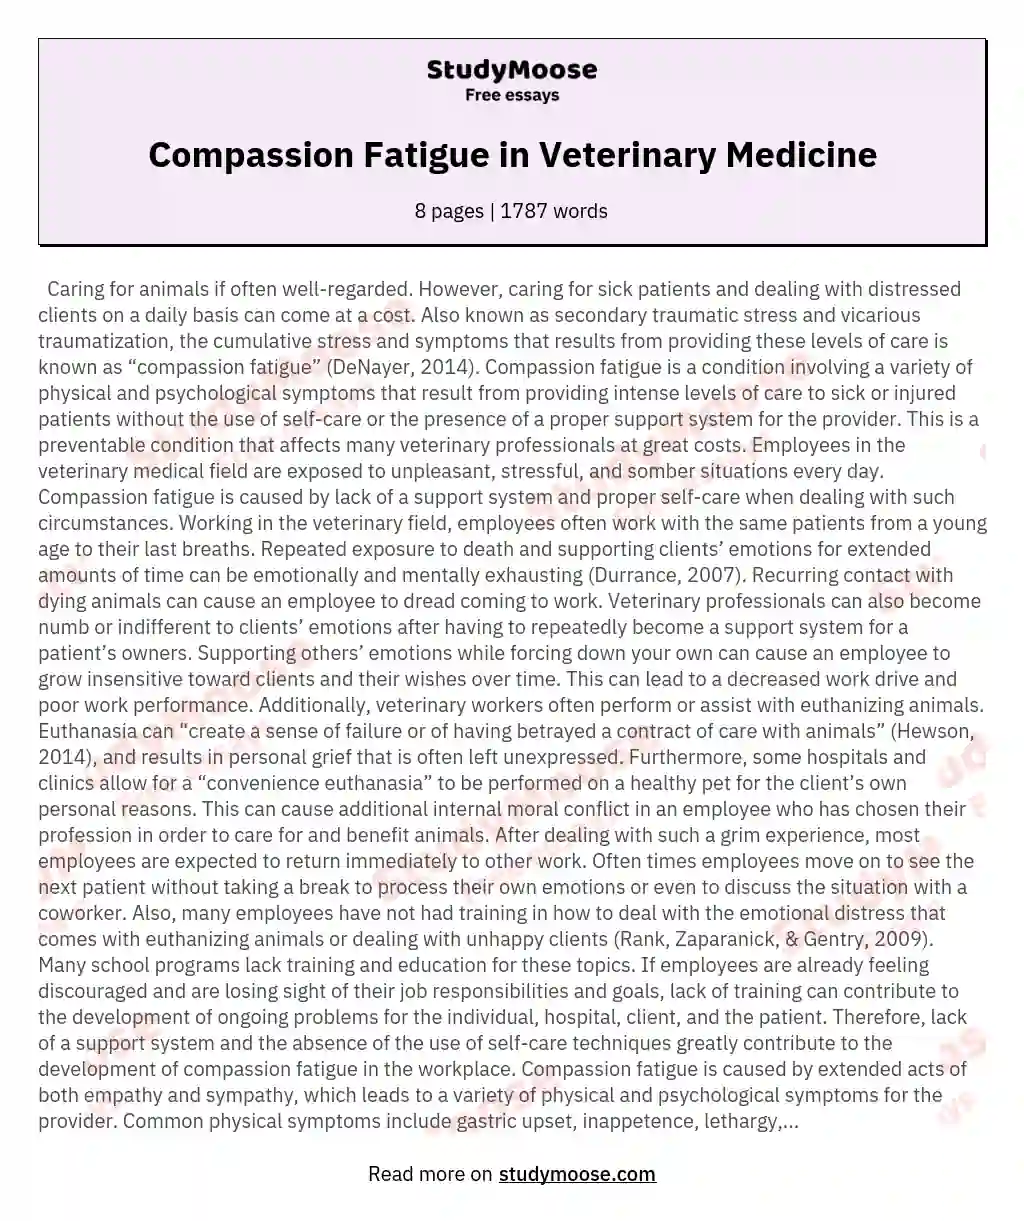 Compassion Fatigue in Veterinary Medicine